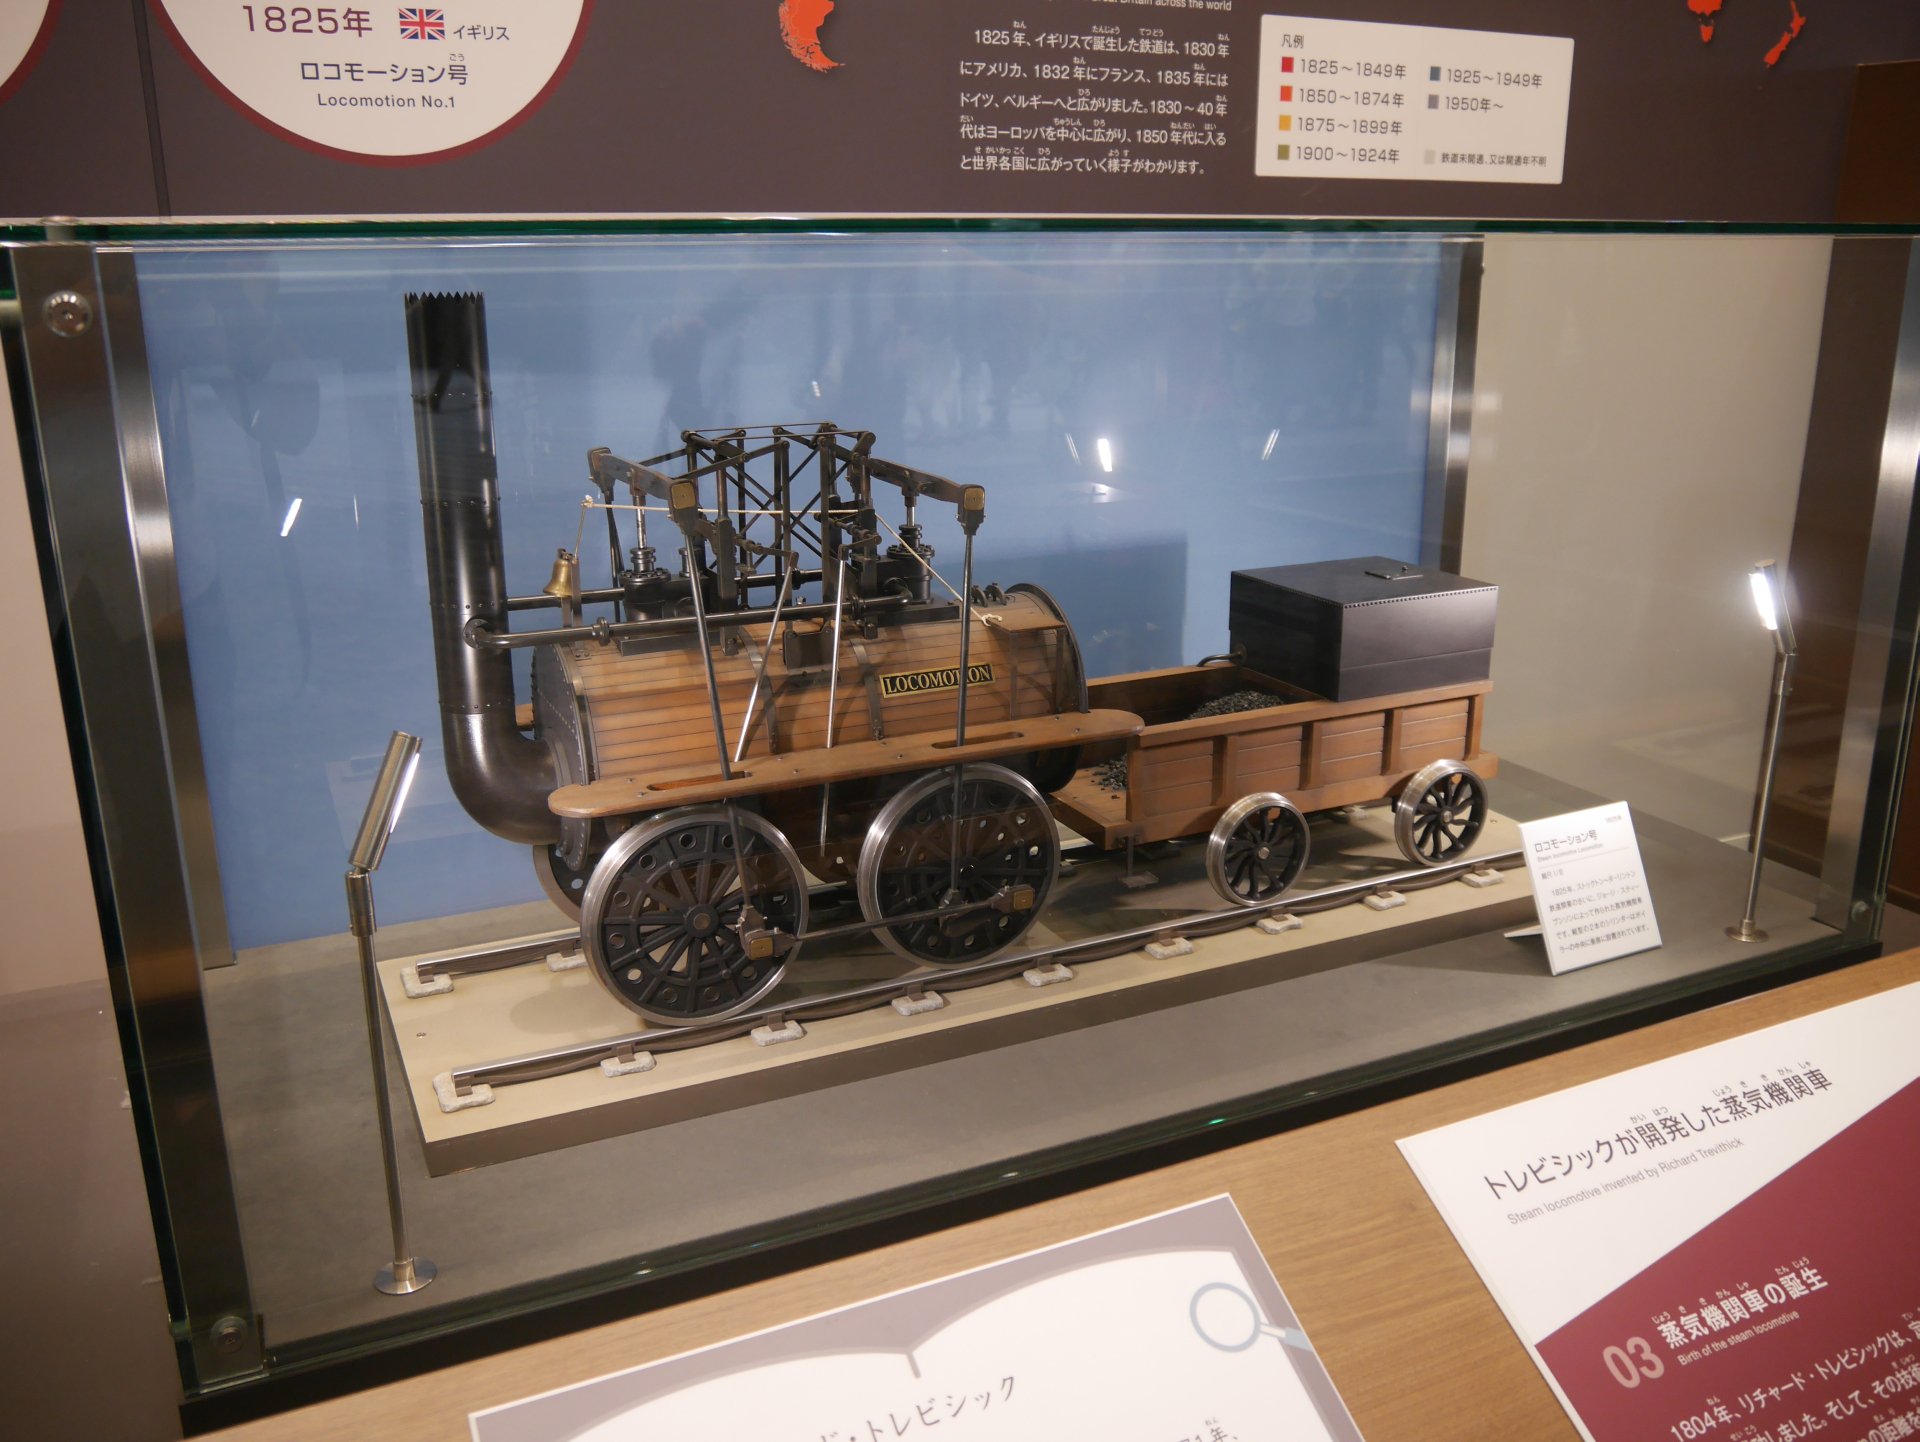 大町パルク 設備鉄が京都鉄道博物館へ行ったなら その2 鉄道のあゆみコーナーの 機関車模型の その下のレール トレビシック作ロコモーション号の下には魚腹レール スチーブンソンのロケット号の下には双頭レールがありました T Co Frxcil8rtr